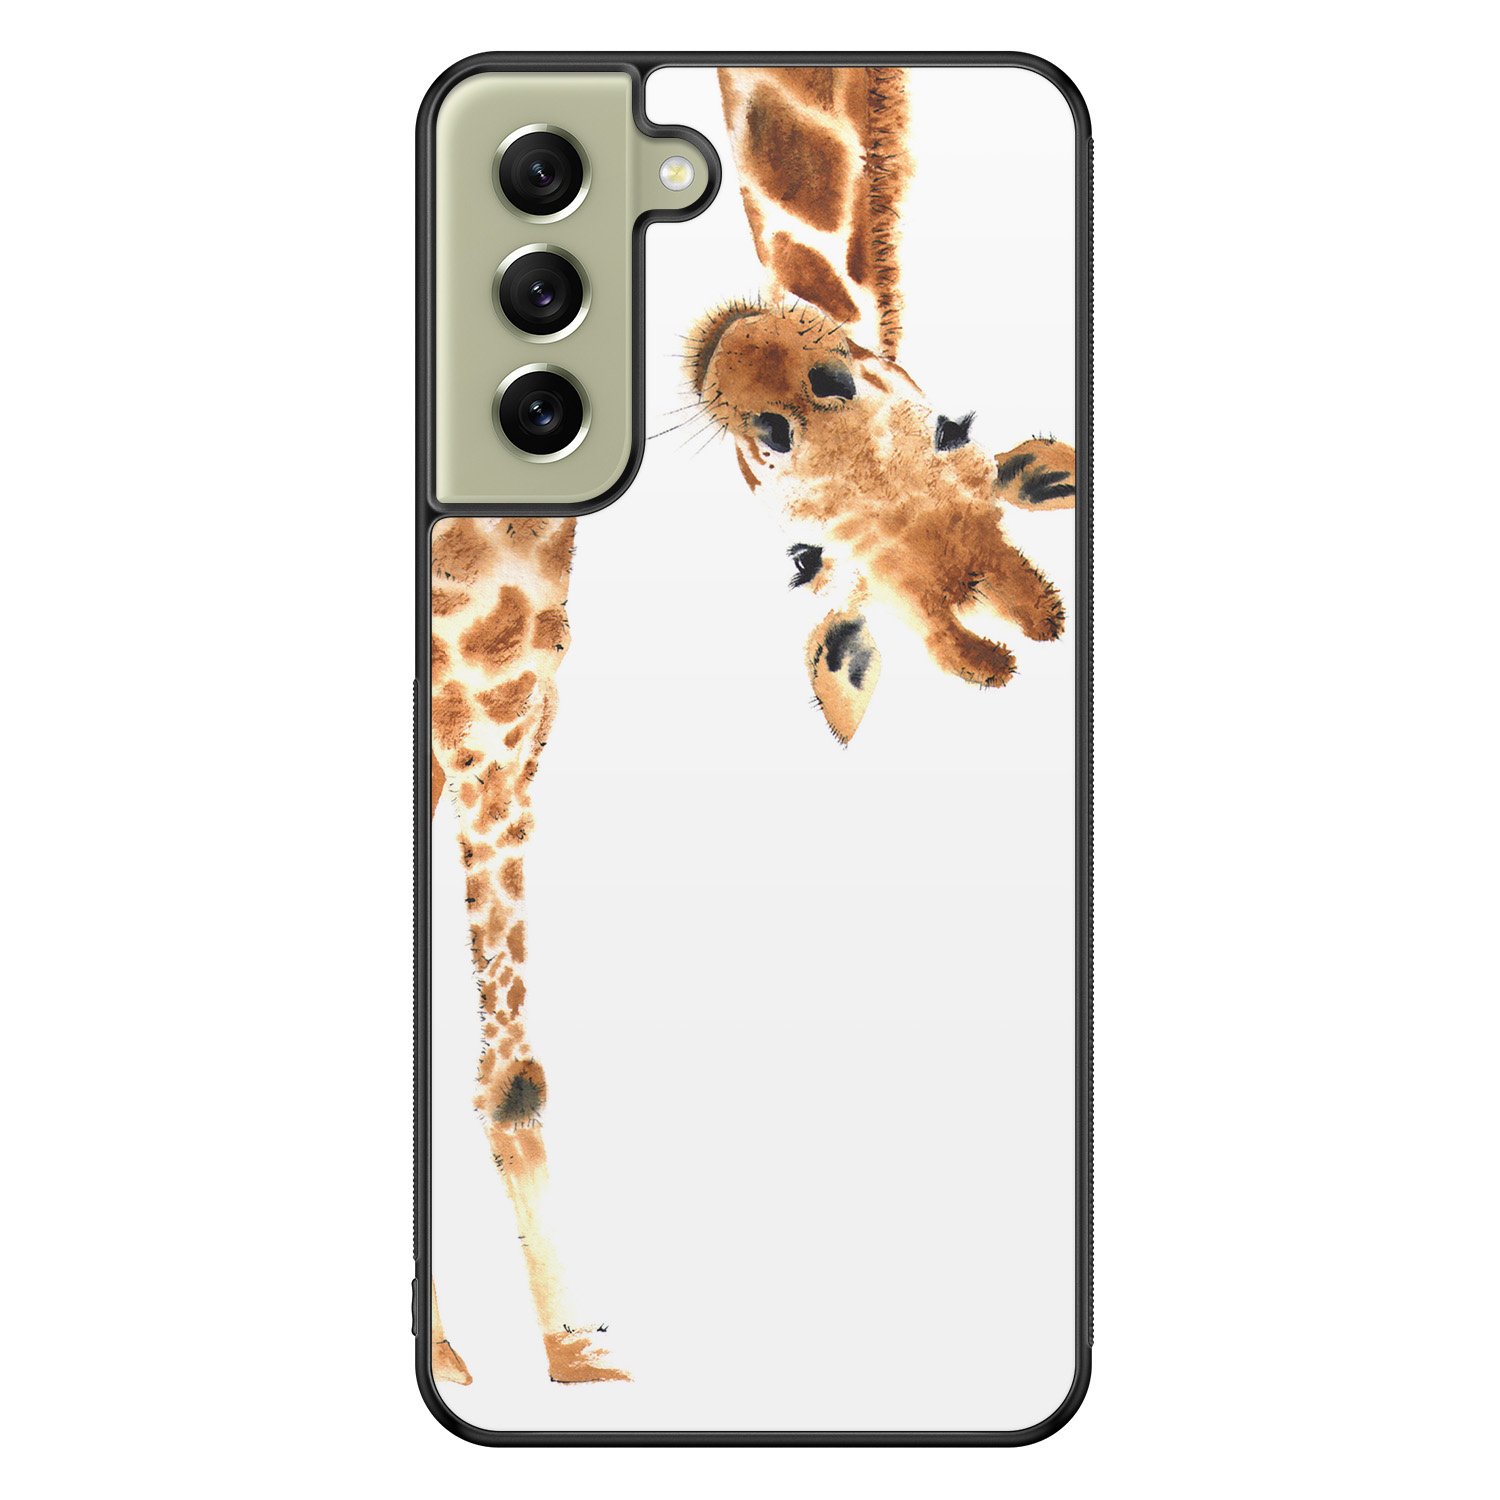 Leuke Telefoonhoesjes Samsung Galaxy S21 FE hoesje - Giraffe peekaboo